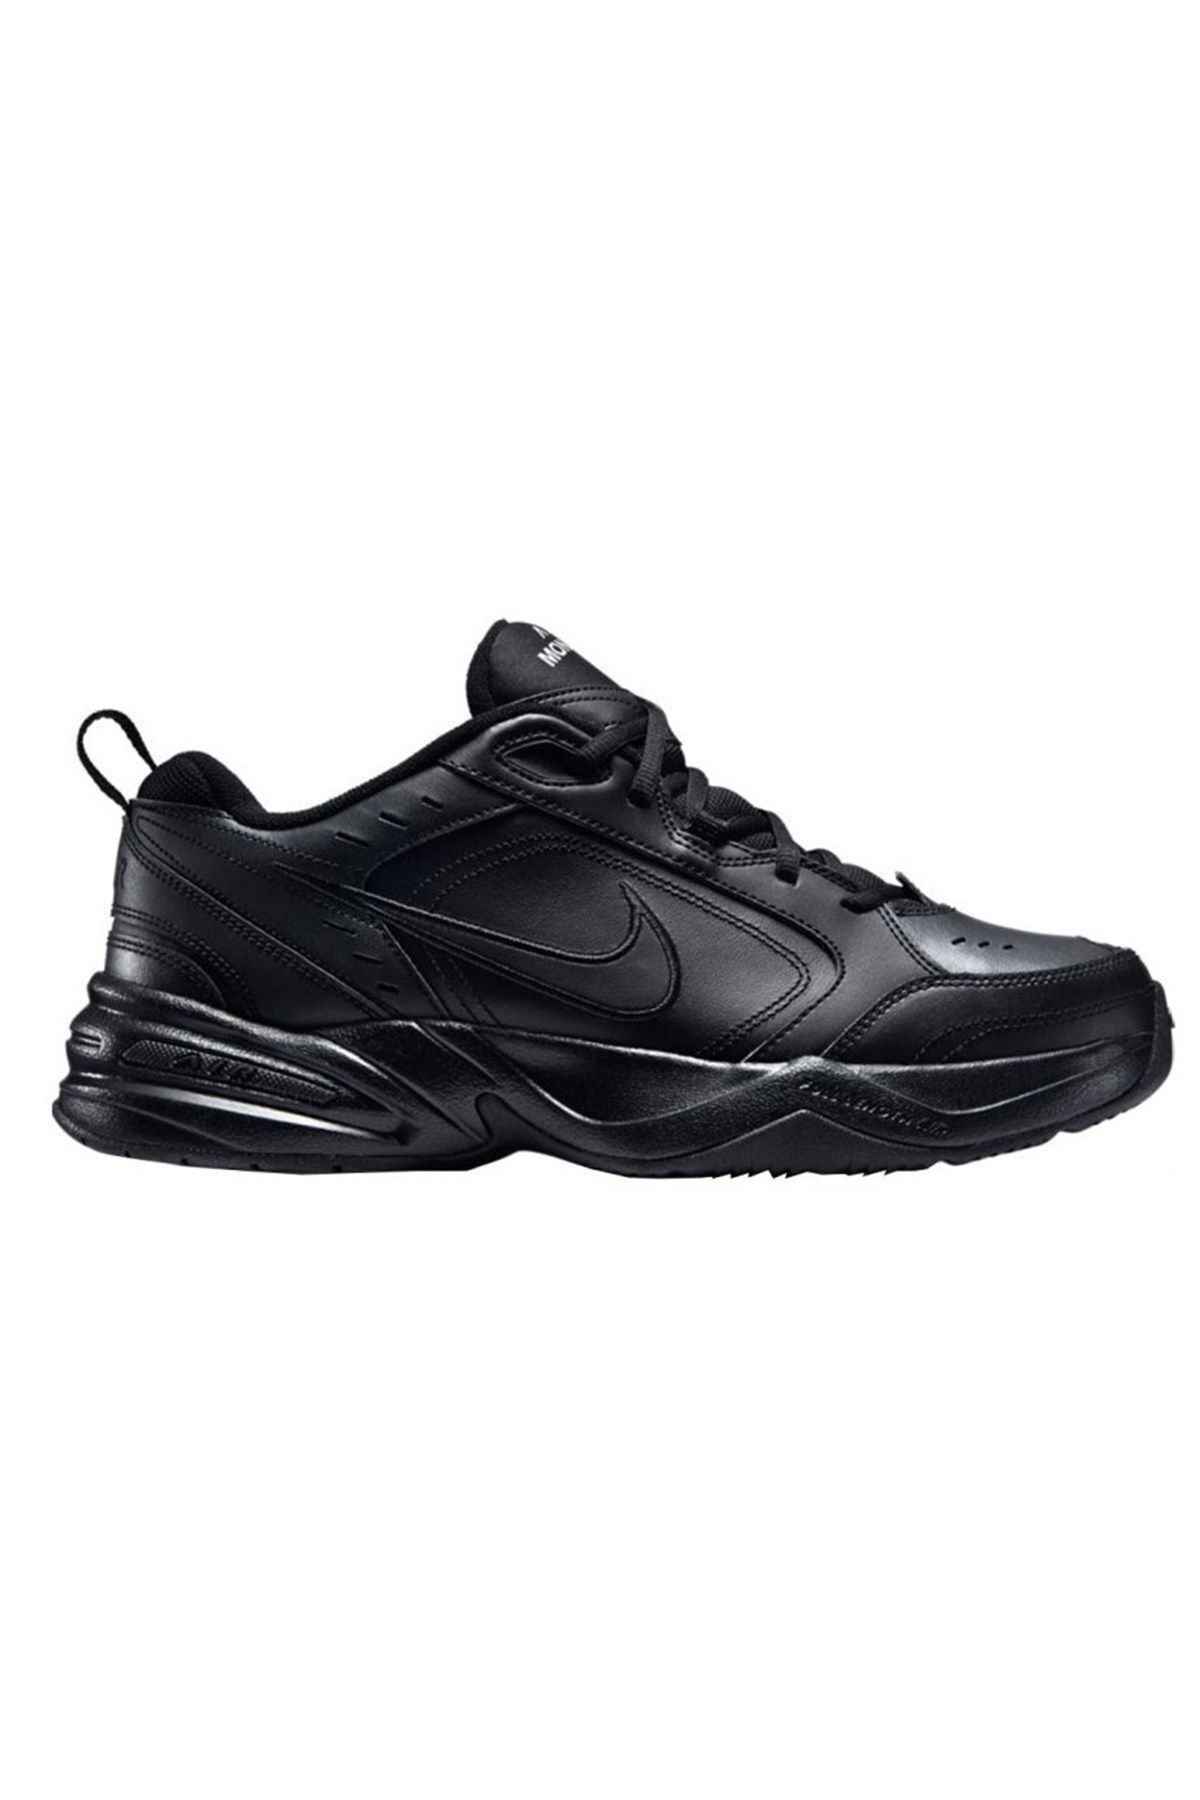 Nike Aır Monarch Iv Erkek Spor Ayakkabı Siyah